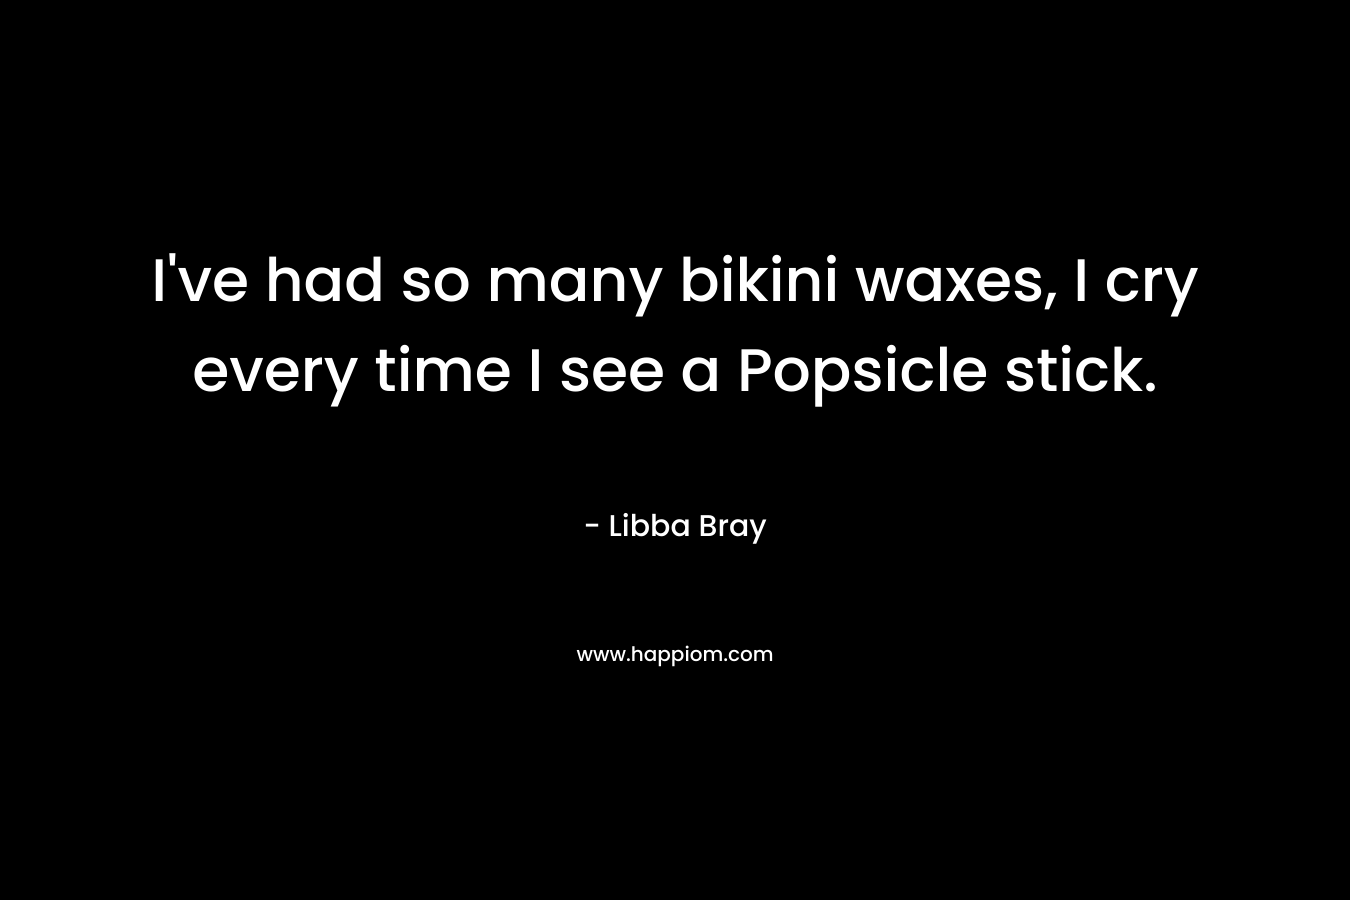 I’ve had so many bikini waxes, I cry every time I see a Popsicle stick. – Libba Bray